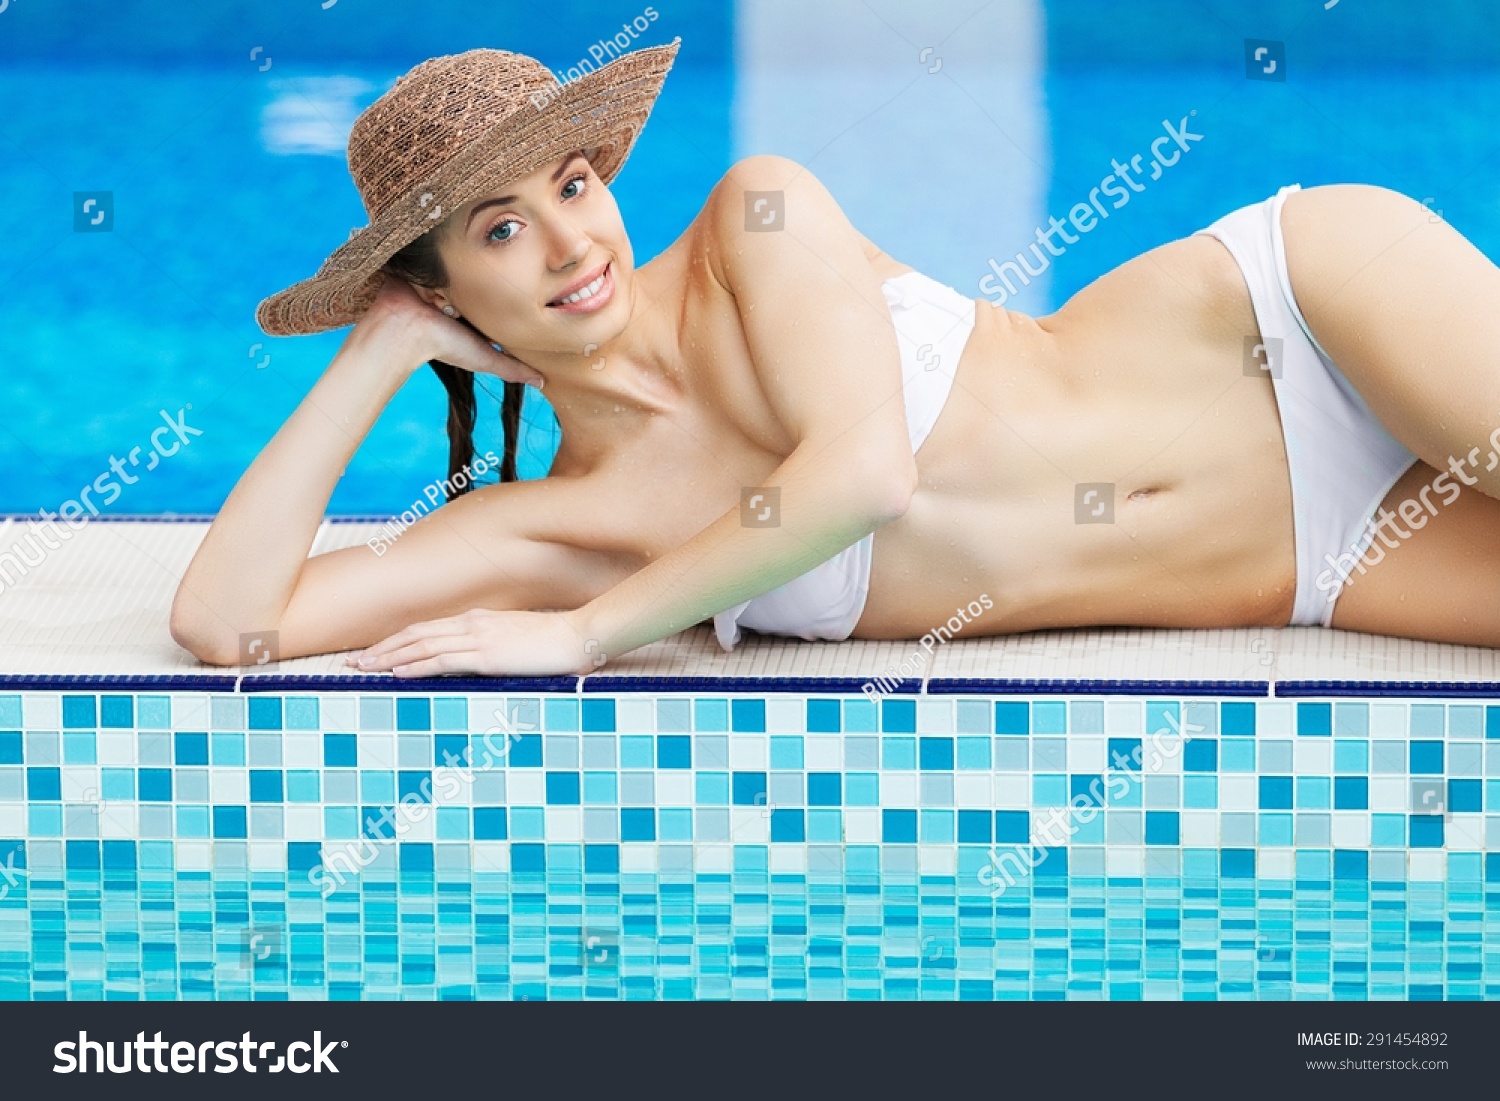 Bikini Sunbathing Women Stock Photo Shutterstock